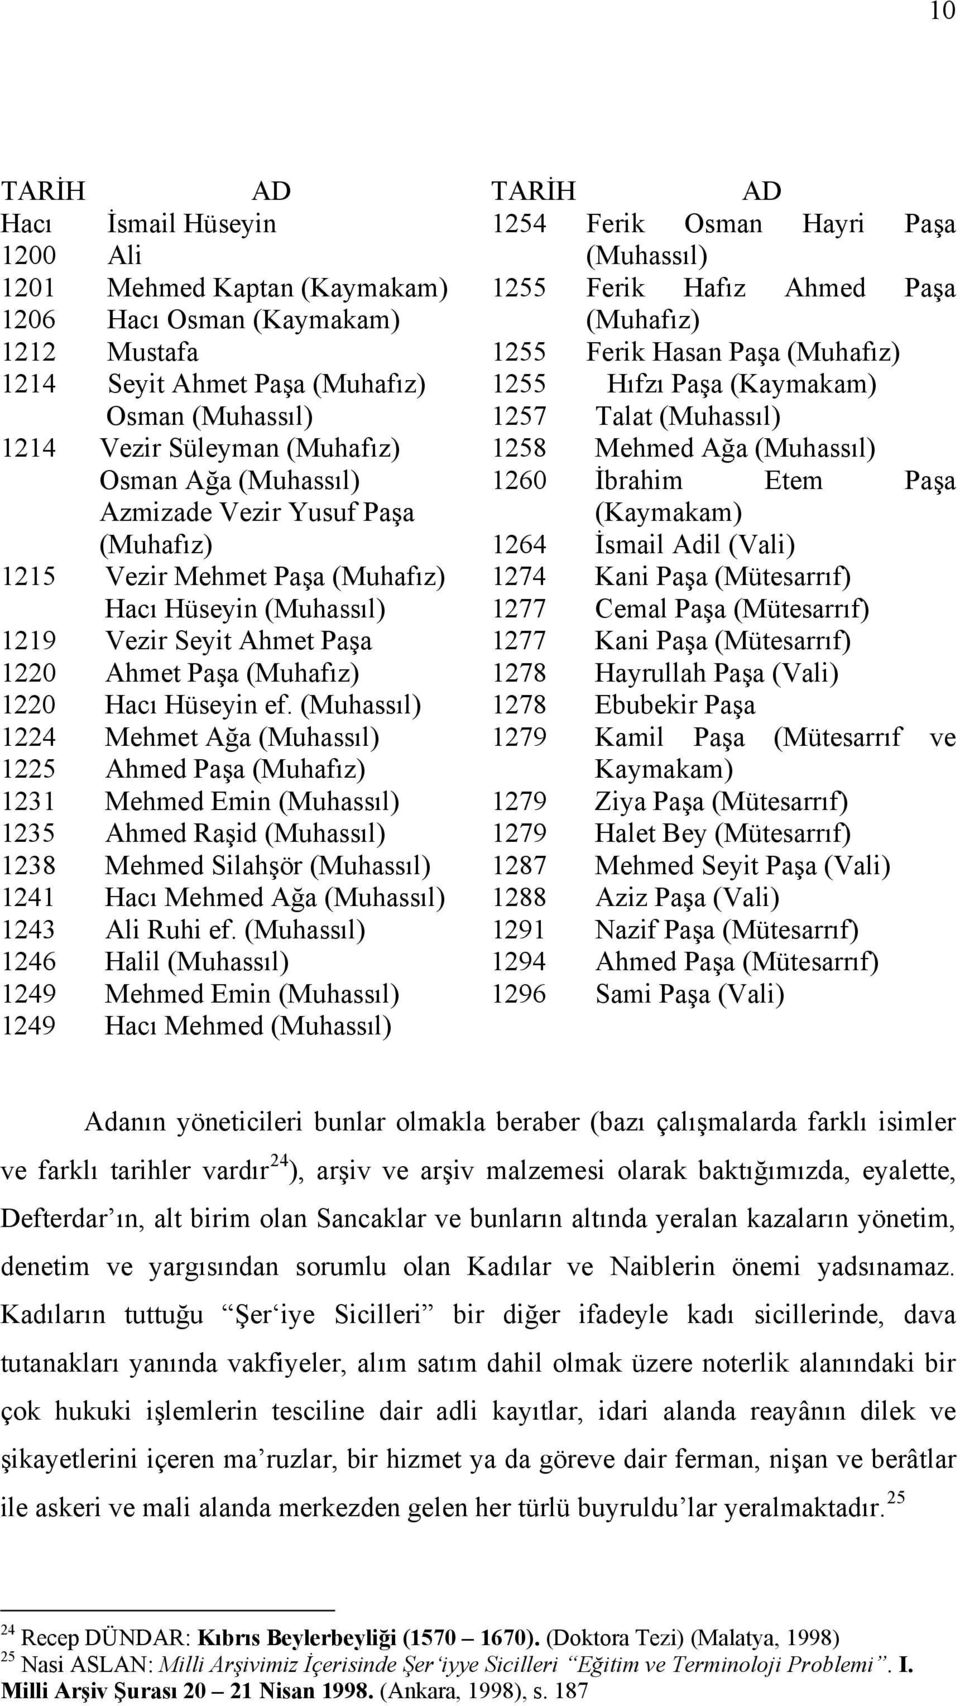 (Muhassıl) 1260 İbrahim Etem Paşa Azmizade Vezir Yusuf Paşa (Kaymakam) (Muhafız) 1264 İsmail Adil (Vali) 1215 Vezir Mehmet Paşa (Muhafız) 1274 Kani Paşa (Mütesarrıf) Hacı Hüseyin (Muhassıl) 1277